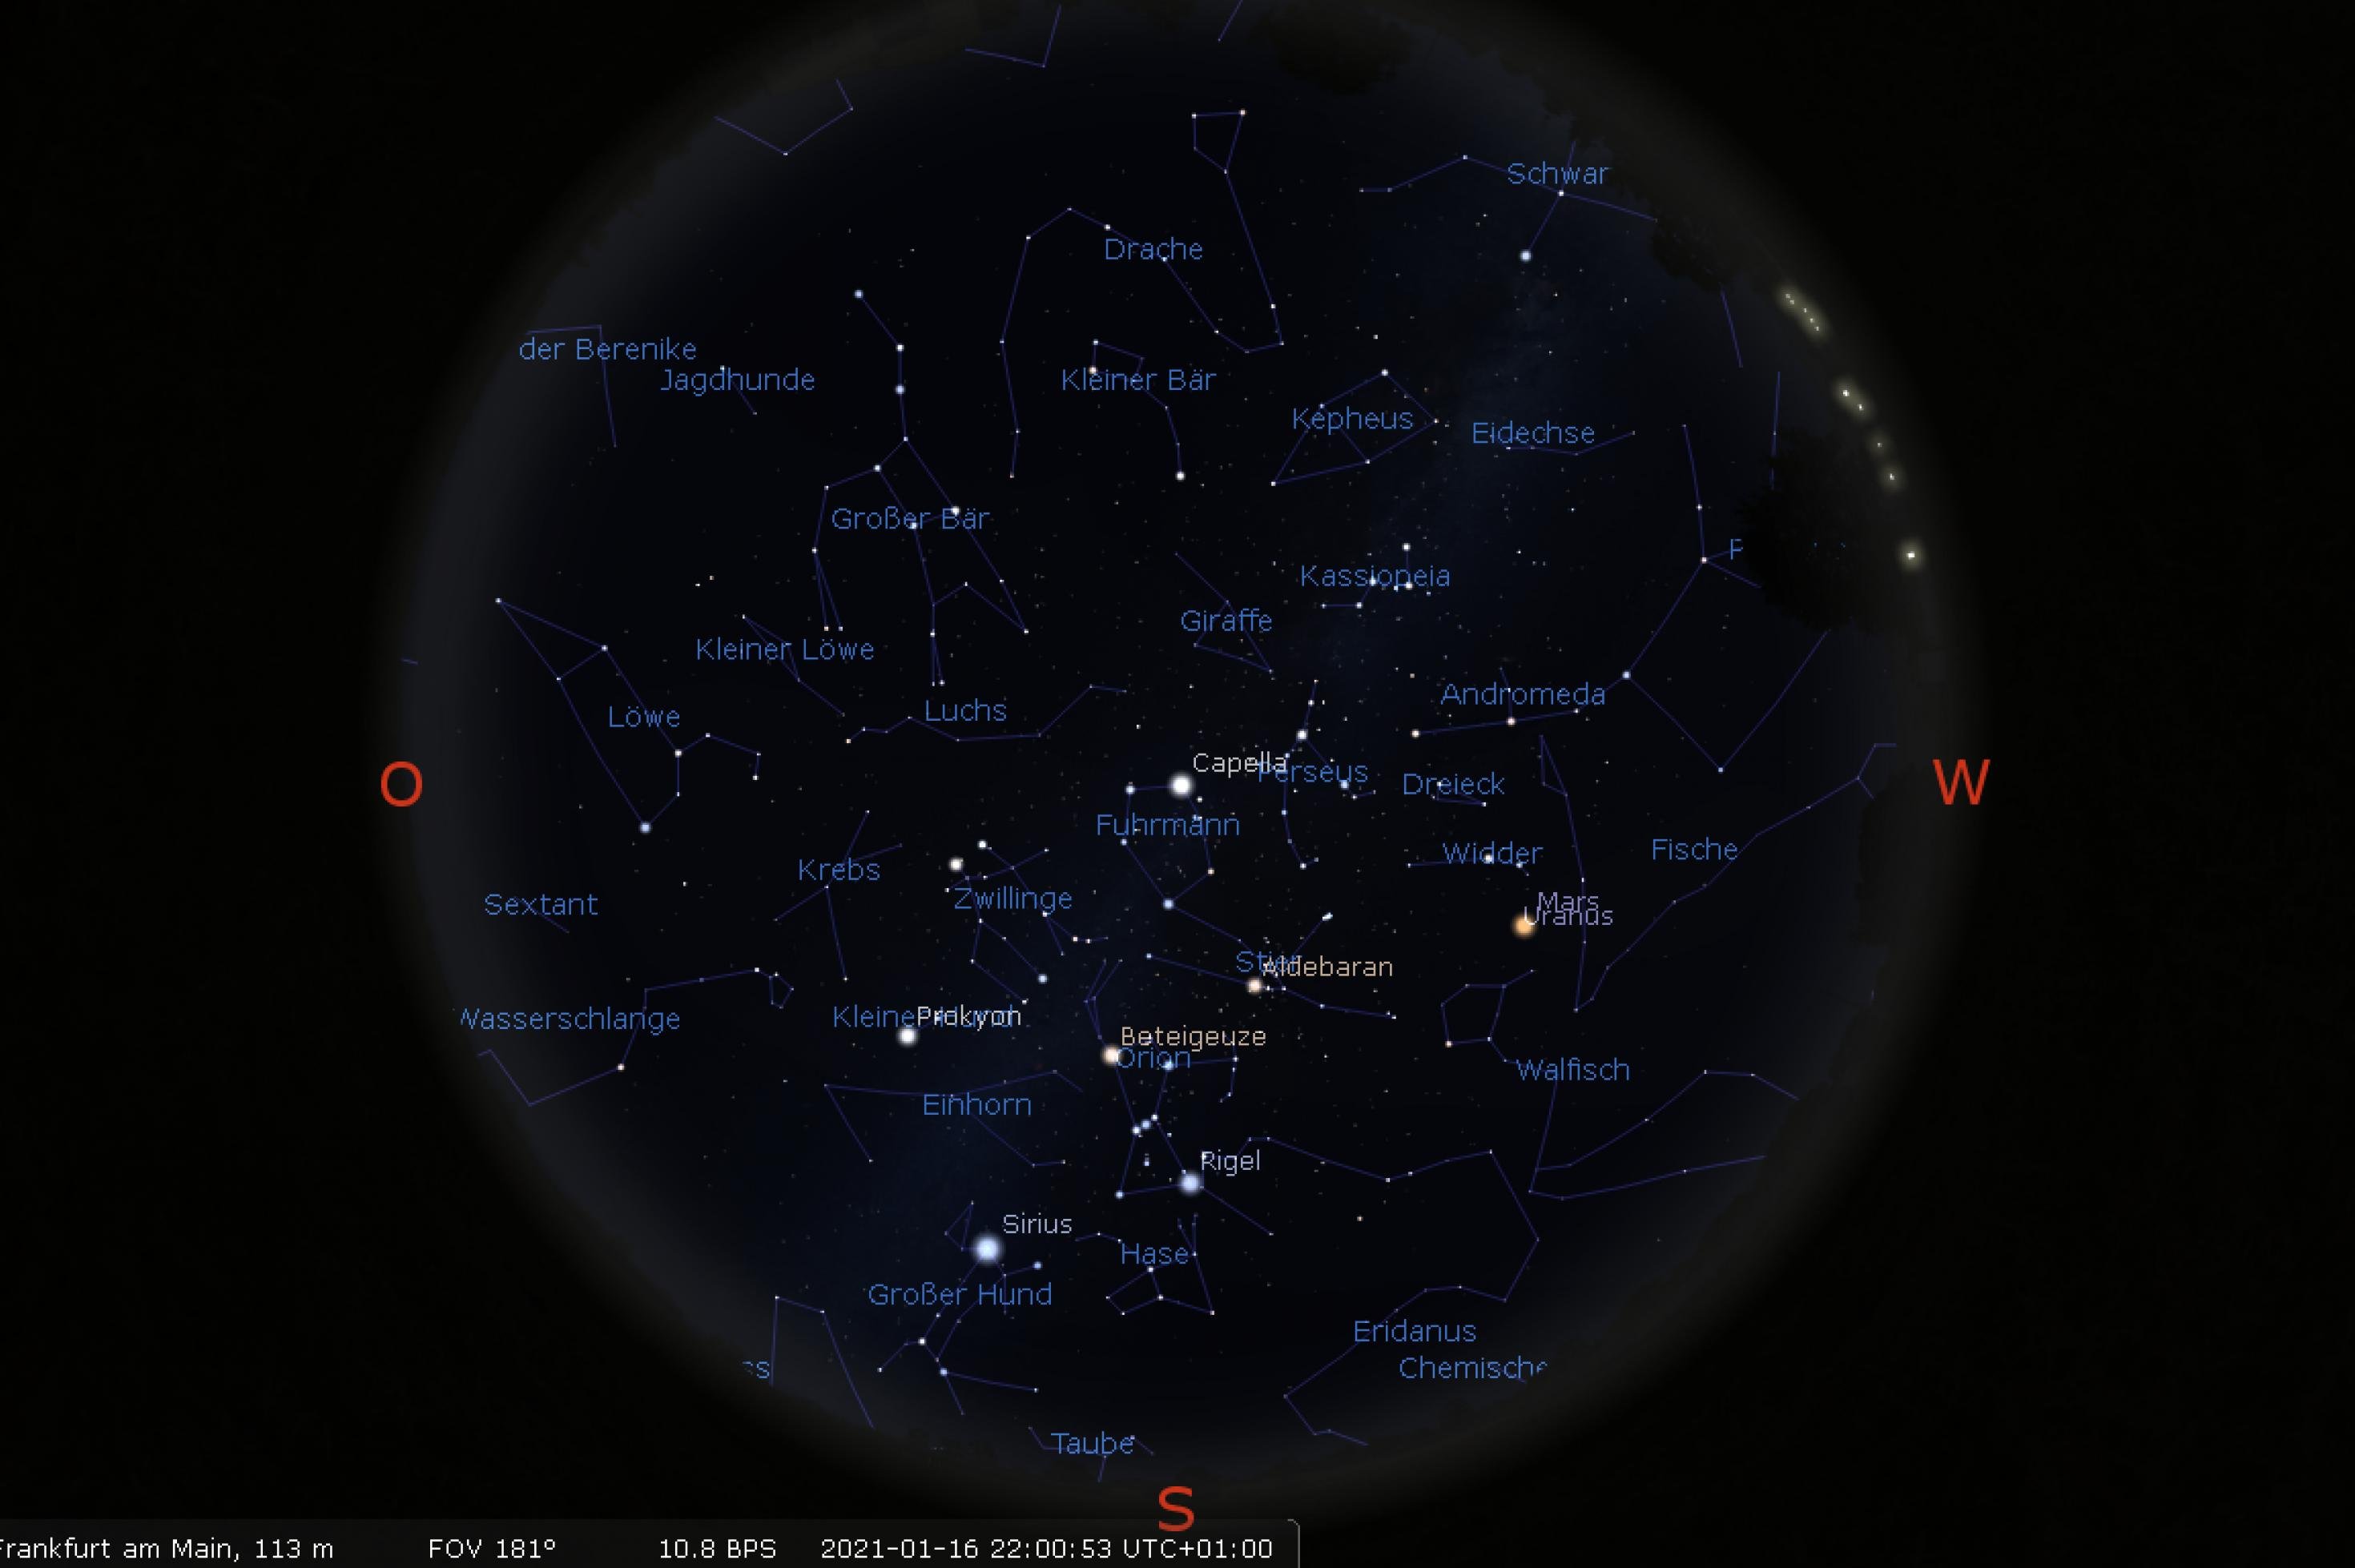 Himmelskarte für die Positionen der Sterne und Planeten für den 16. Januar 2021 gegen 22:00 Uhr, Standort Frankfurt am Main.